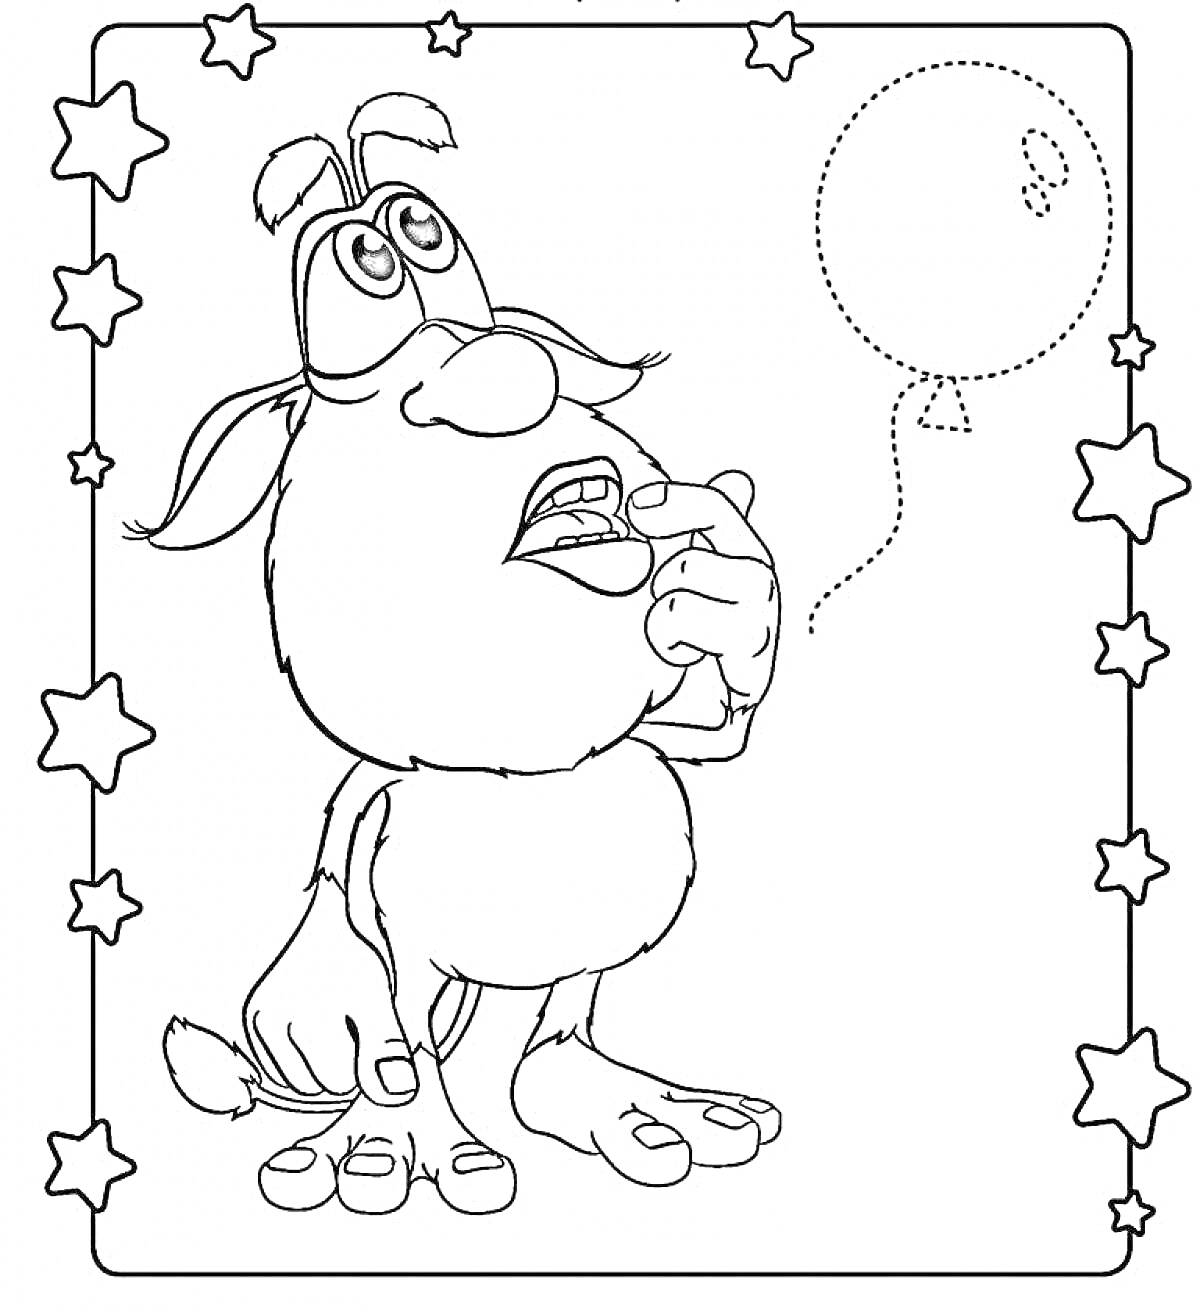 Раскраска Буба с воздушным шариком в рамке из звезд